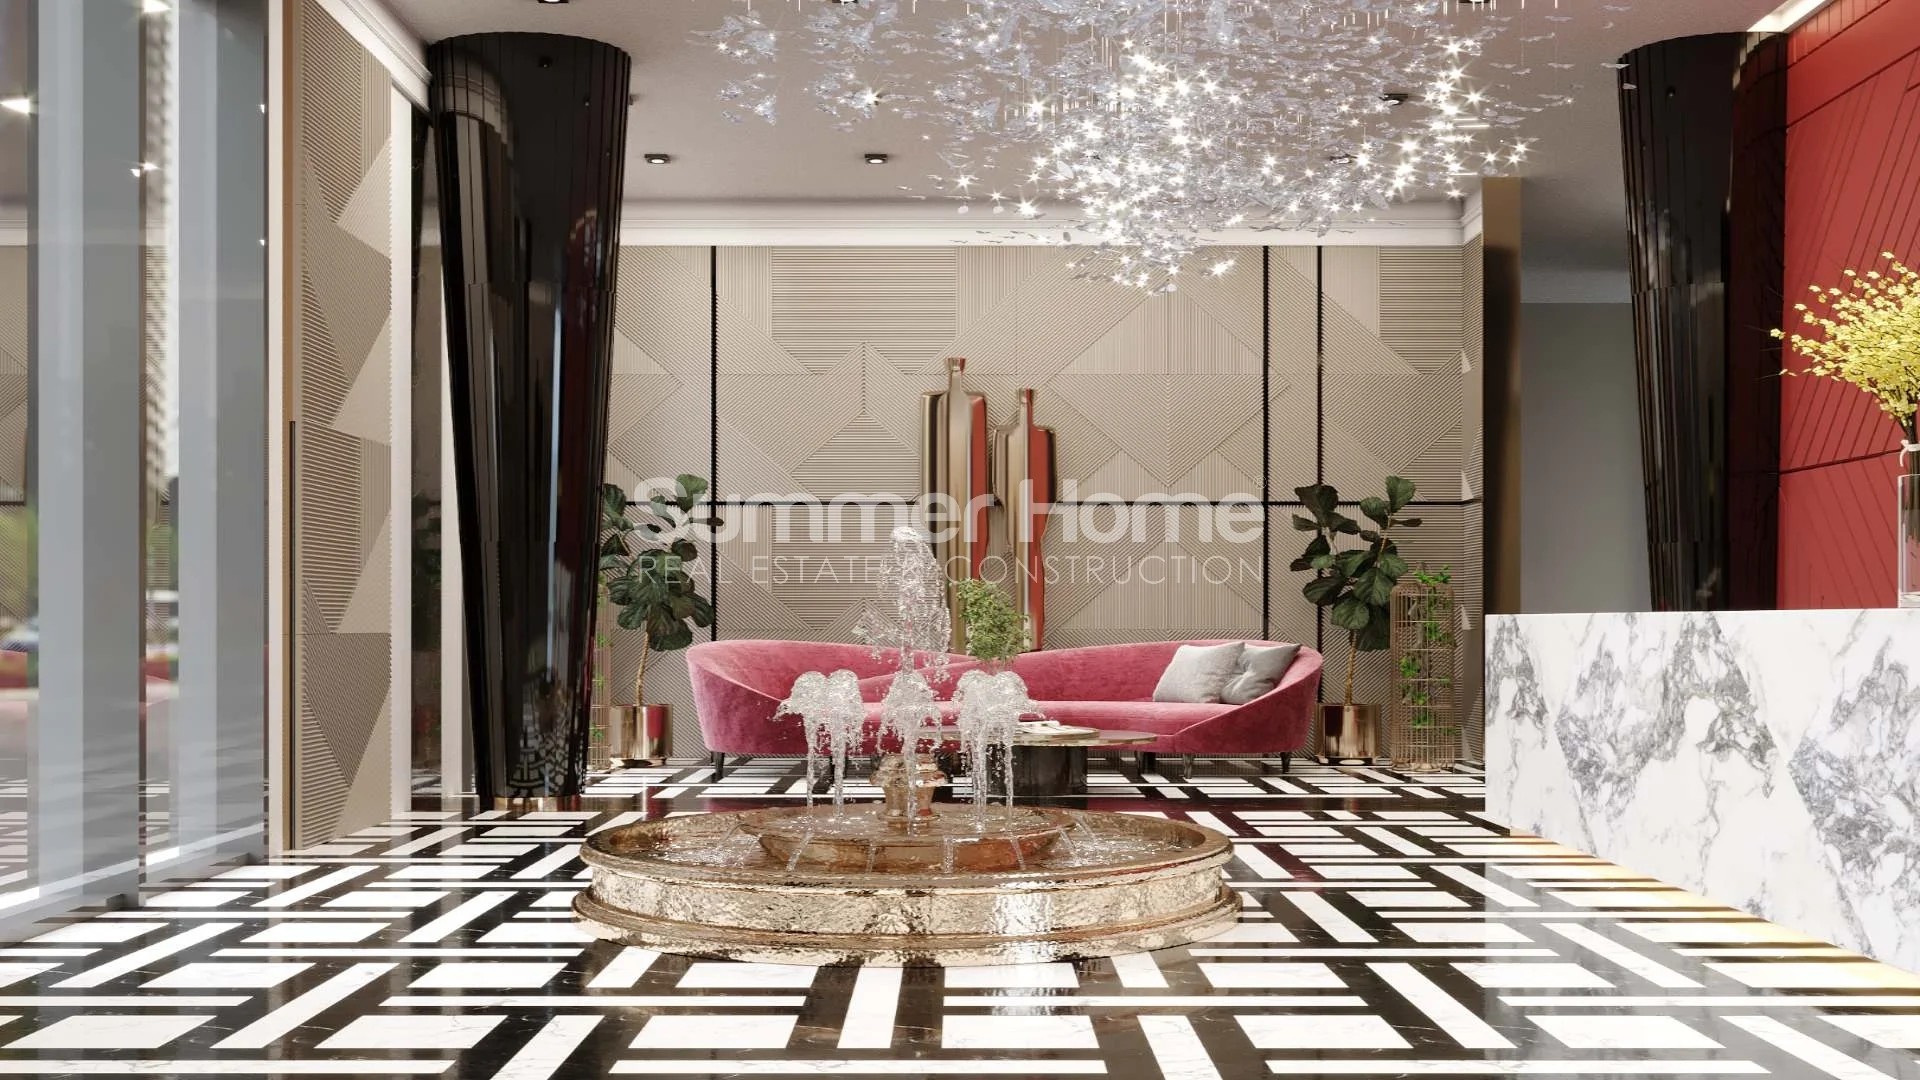 Apartmani modernog dizajna luksuznog stila  u Tosmuru  Društveni sadržaji  - 22